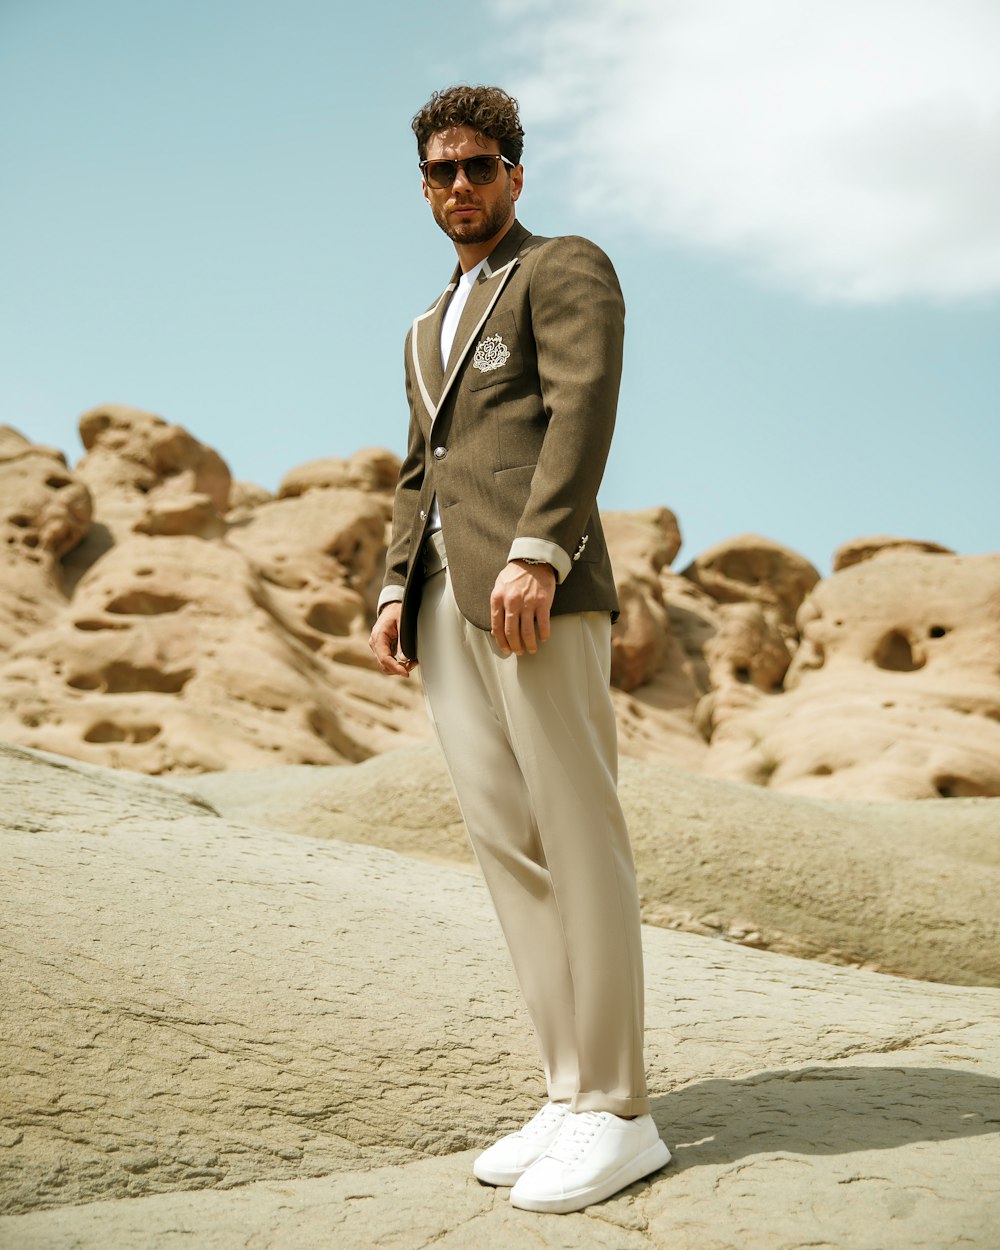 a man standing in a desert